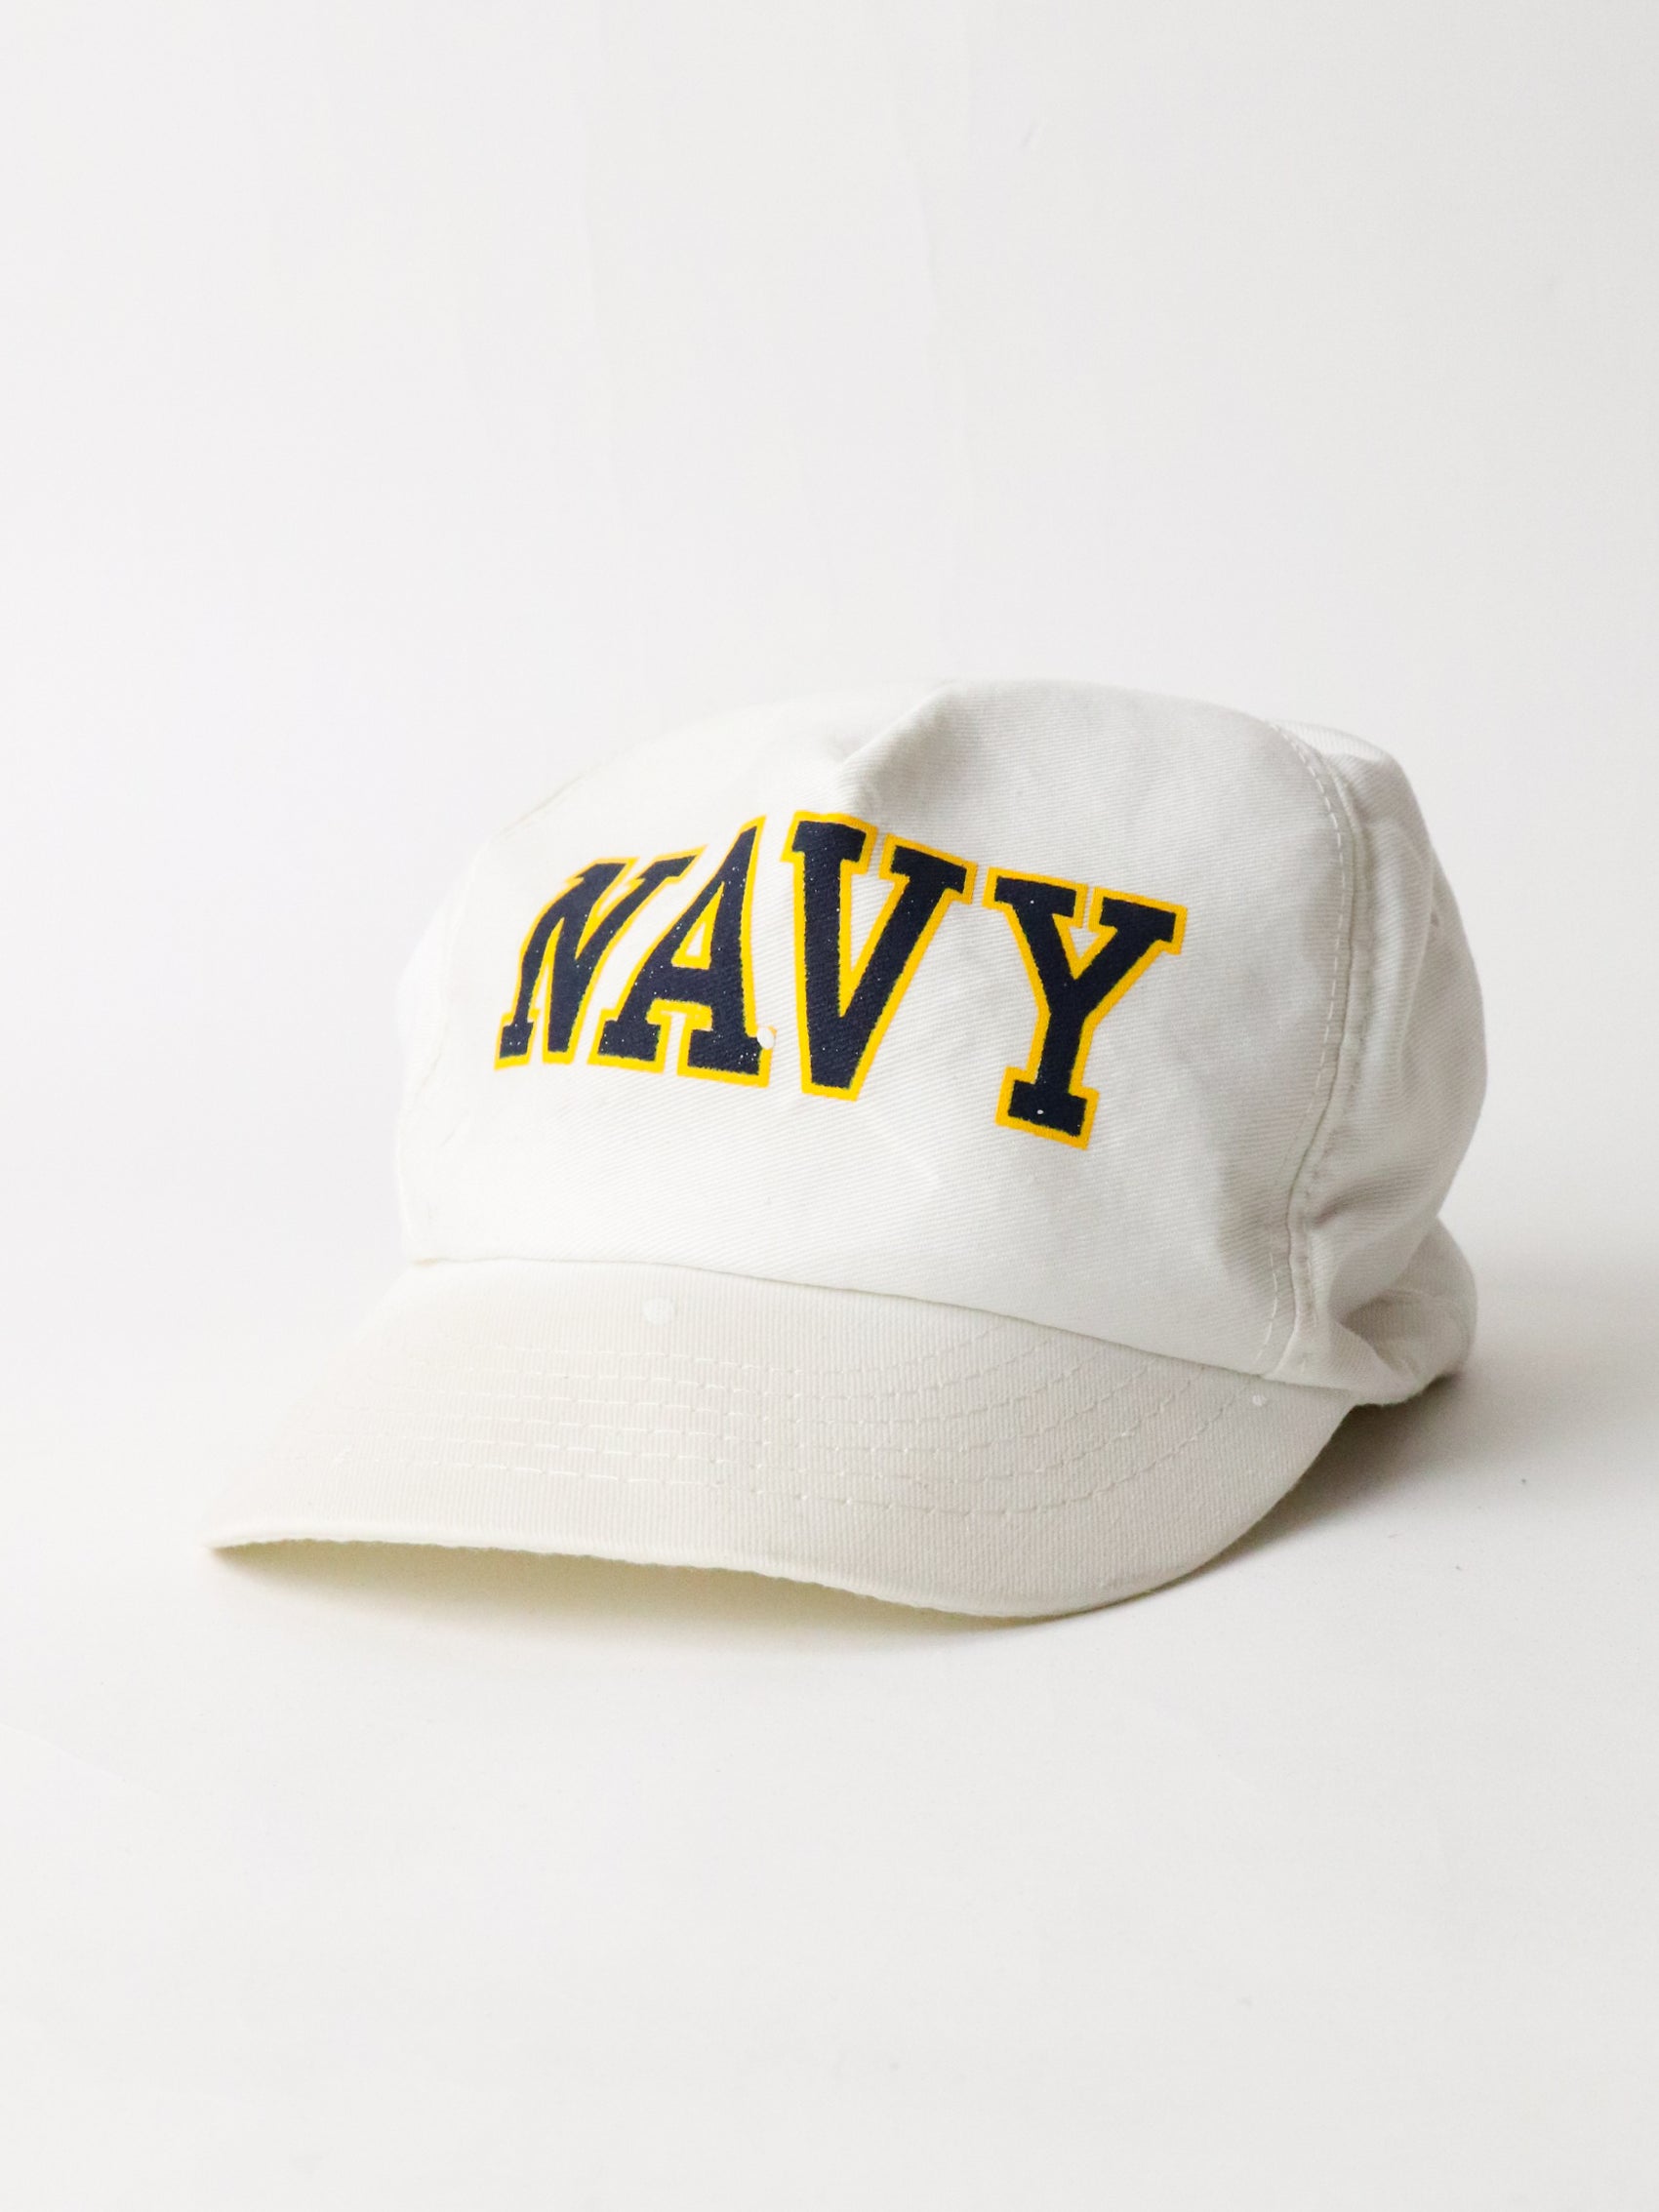 Vintage U.S. Navy Hat Cap Adult White Army